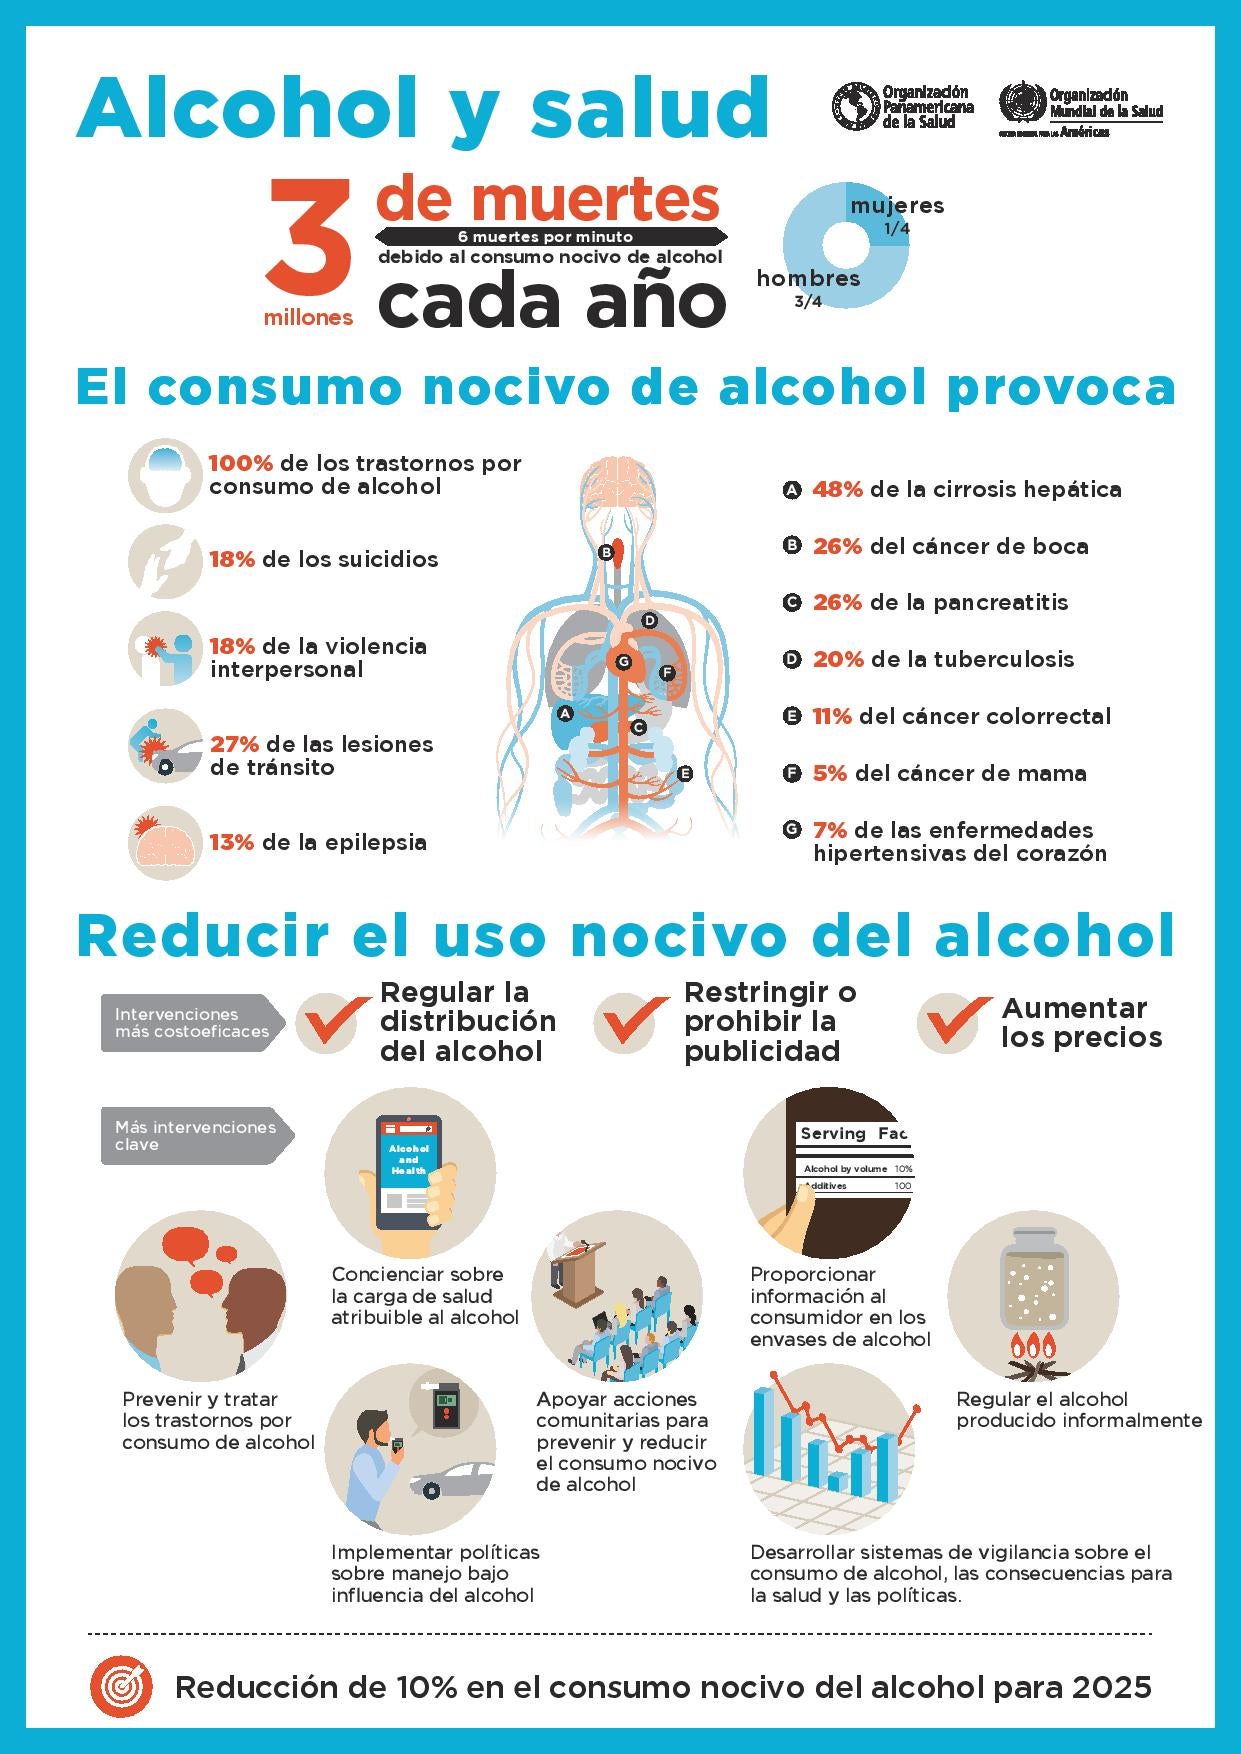 Alcohol y salud